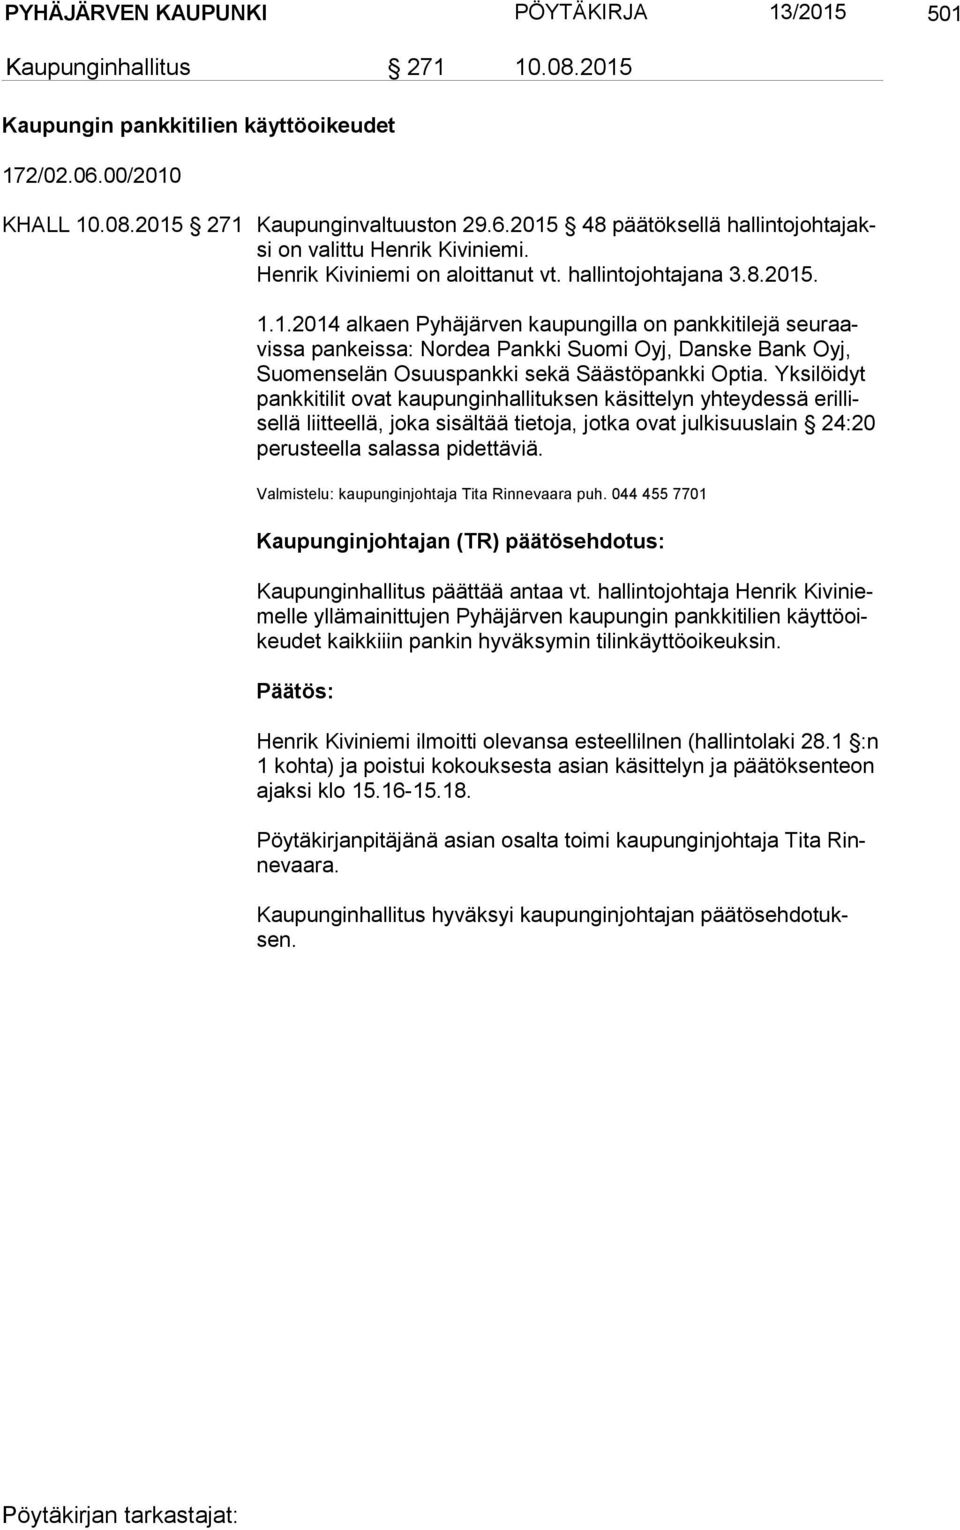 . 1.1.2014 alkaen Pyhäjärven kaupungilla on pankkitilejä seu raavis sa pankeissa: Nordea Pankki Suomi Oyj, Danske Bank Oyj, Suo men se län Osuuspankki sekä Säästöpankki Optia.